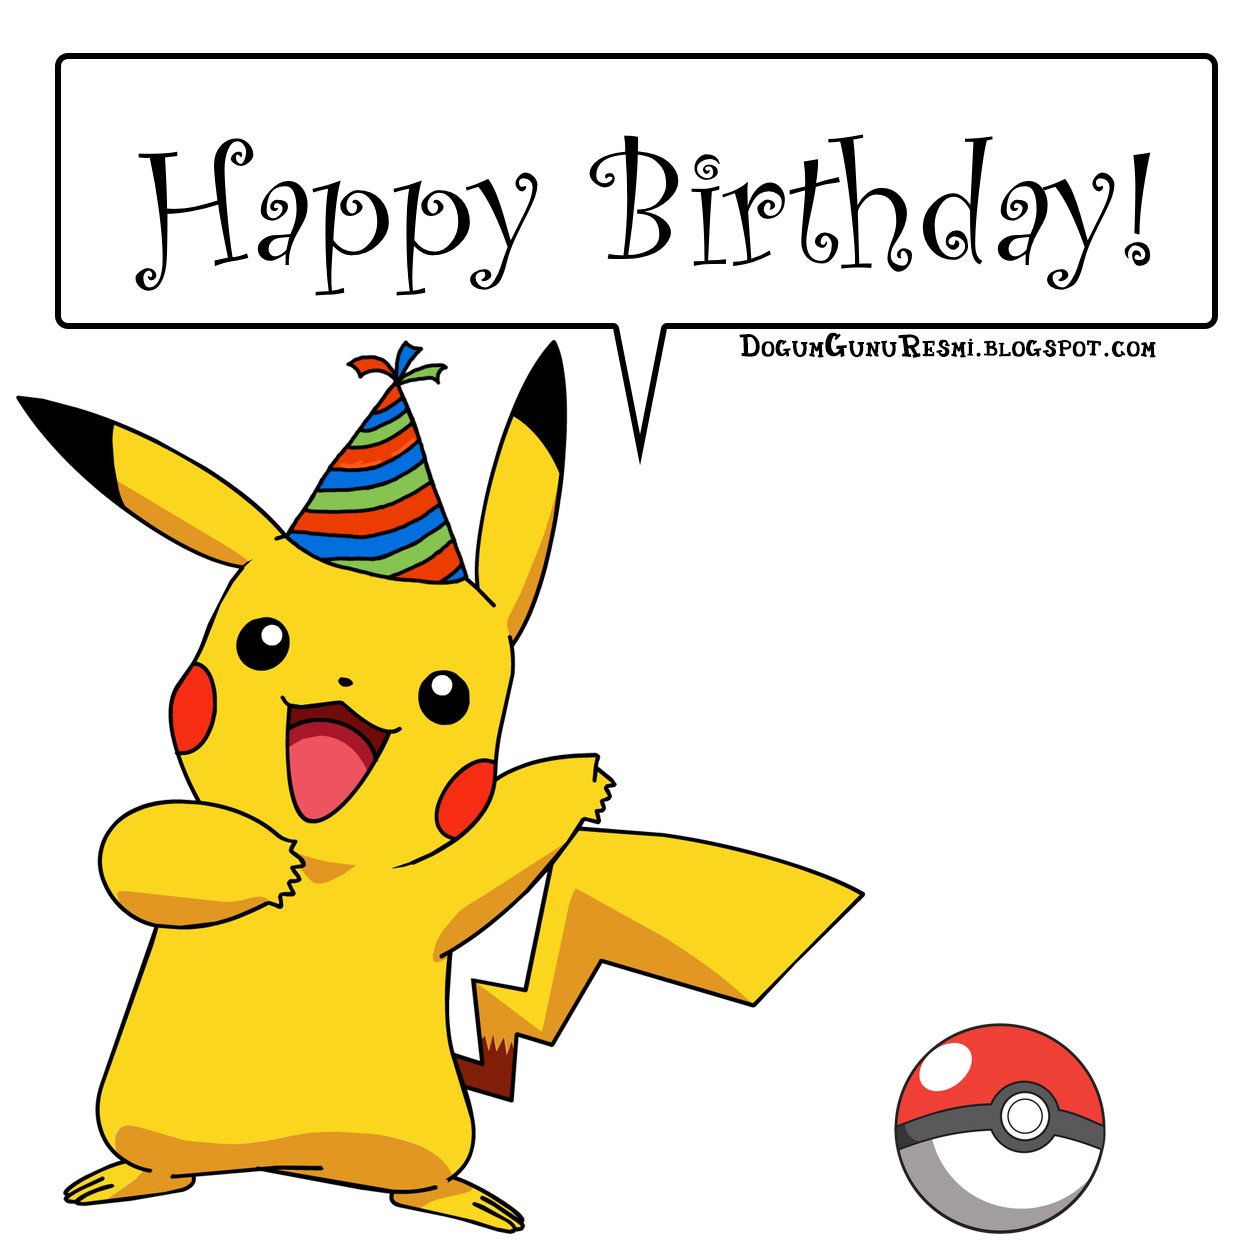 Happy Birthday Pikachu Dogum Günü Resimleri